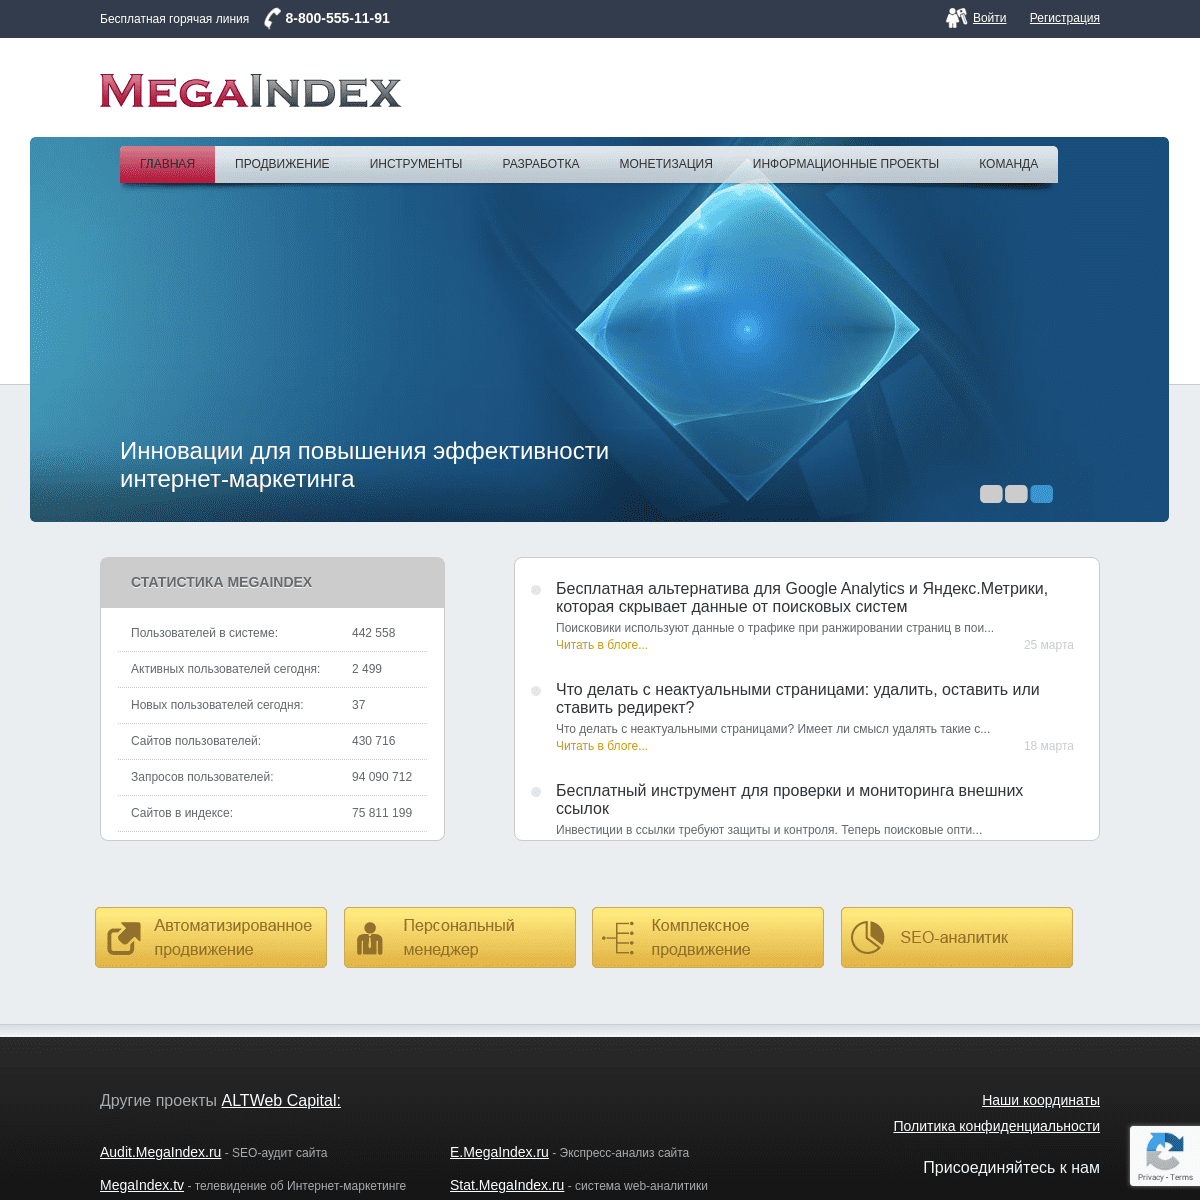 A complete backup of megaindex.ru